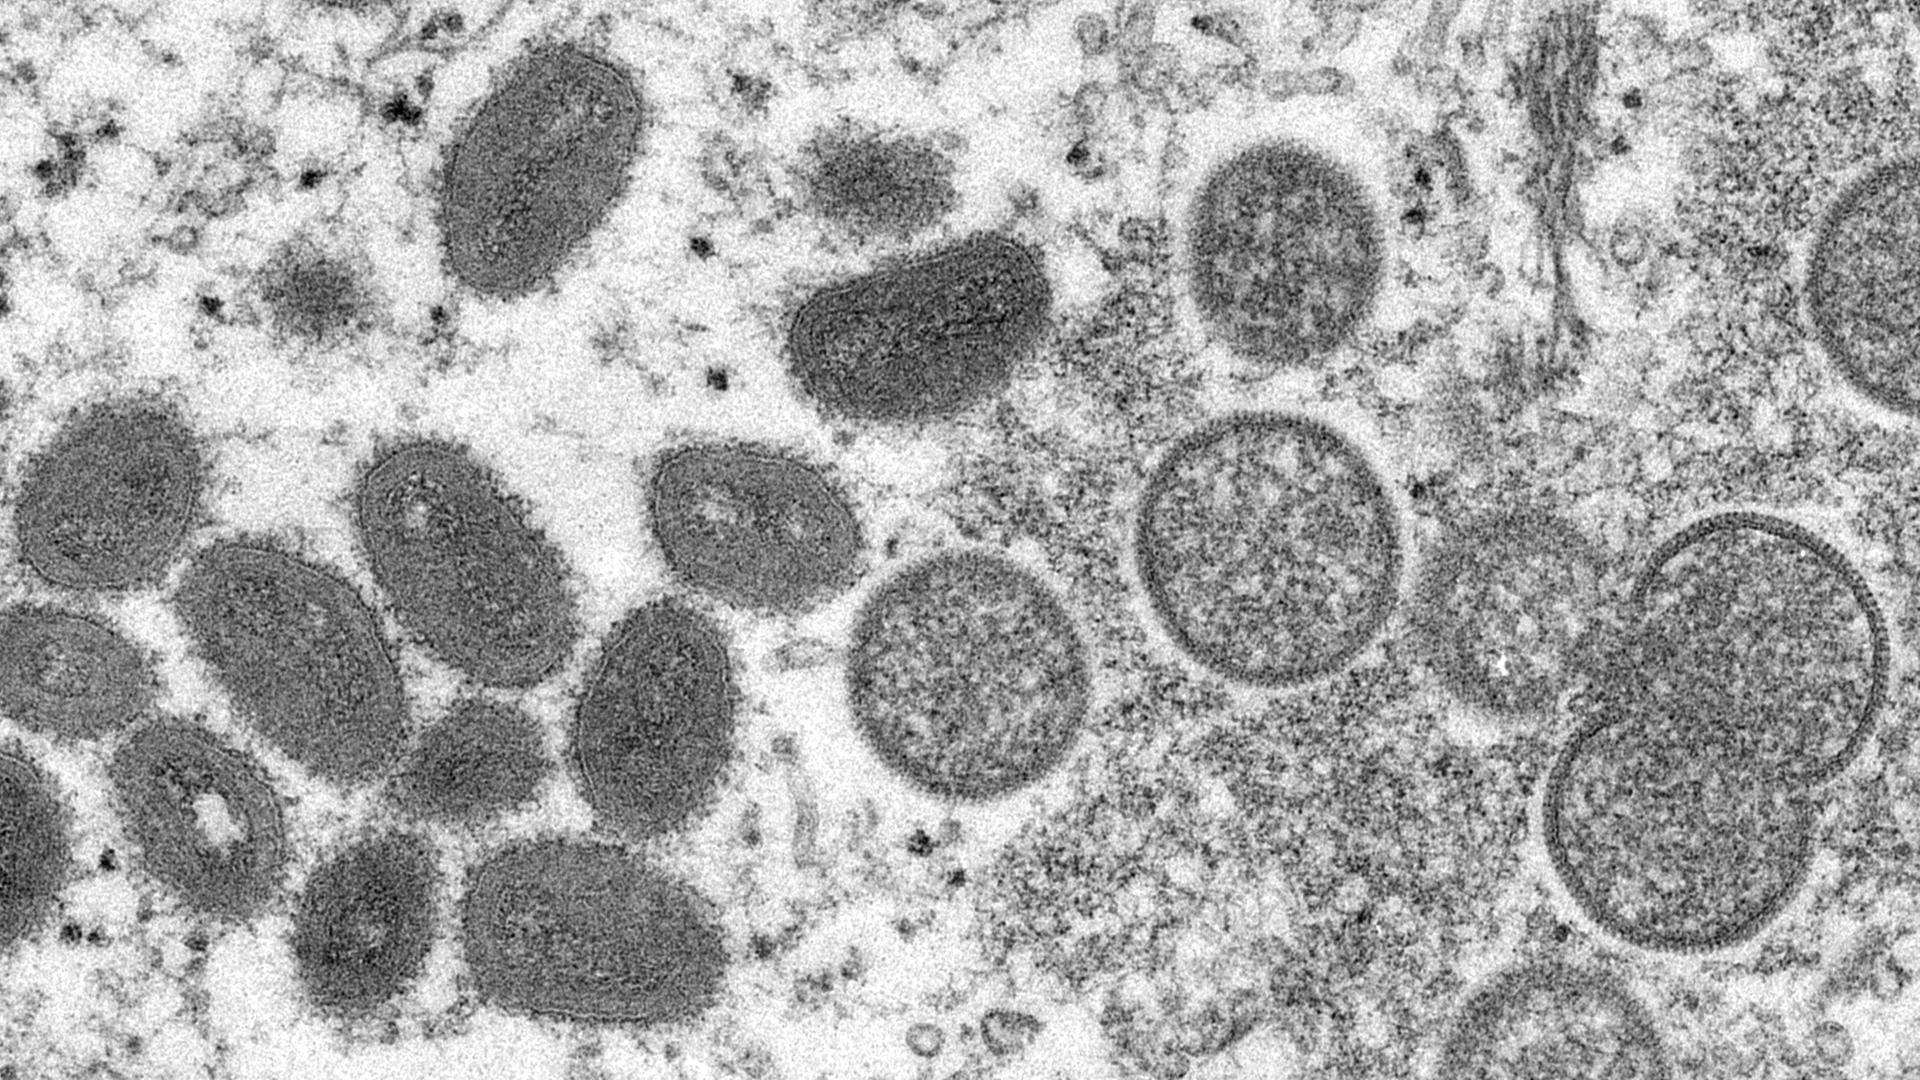 Die elektronenmikroskopische Aufnahme von den Centers for Disease Control and Prevention aus dem Jahr 2003 zeigt reife, ovale Affenpocken-Viren und kugelförmige unreife Virionen aus einer menschlichen Hautprobe. 